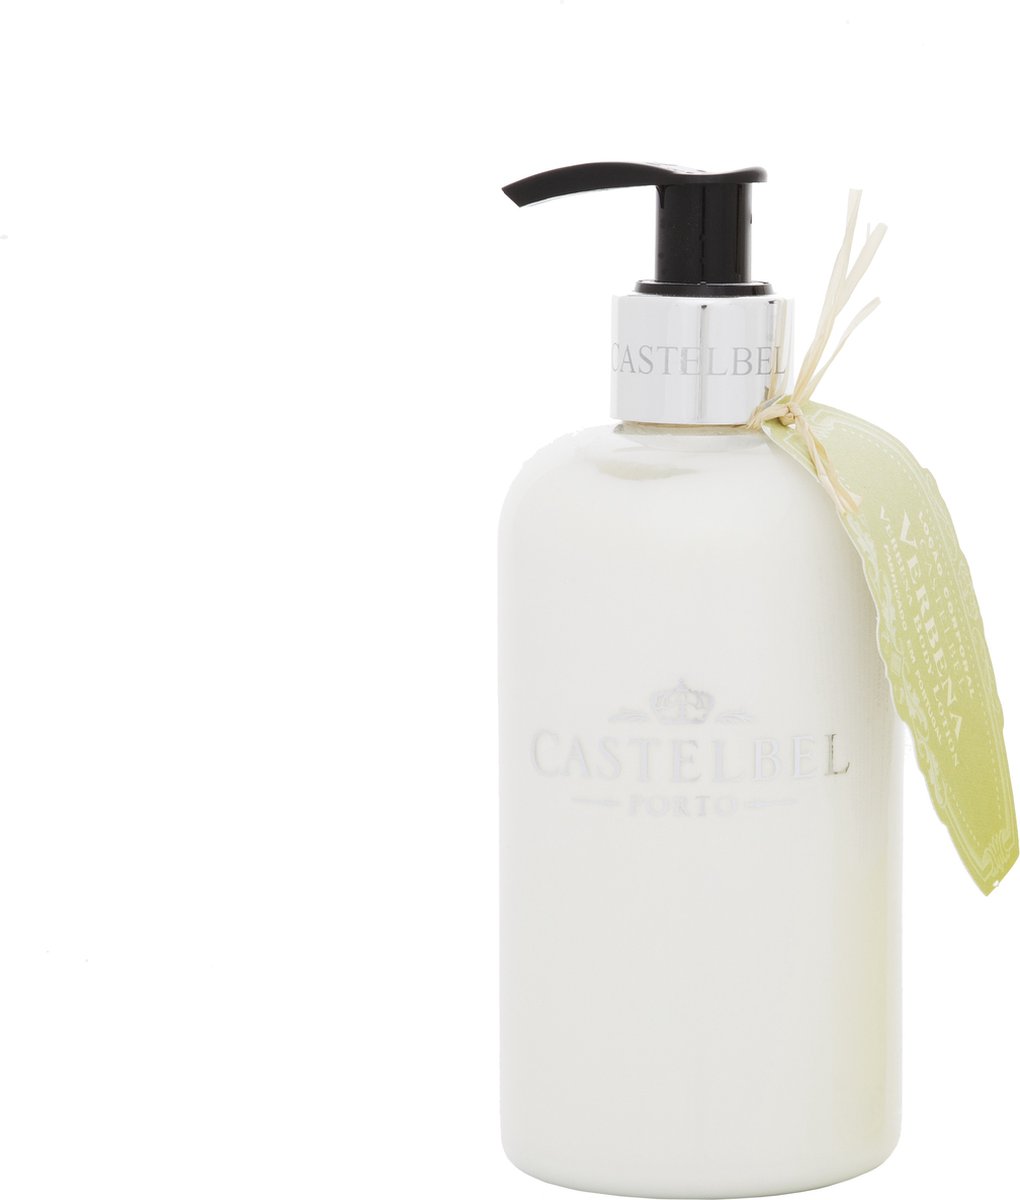 Castelbel, body lotion, Verbena, 300ml